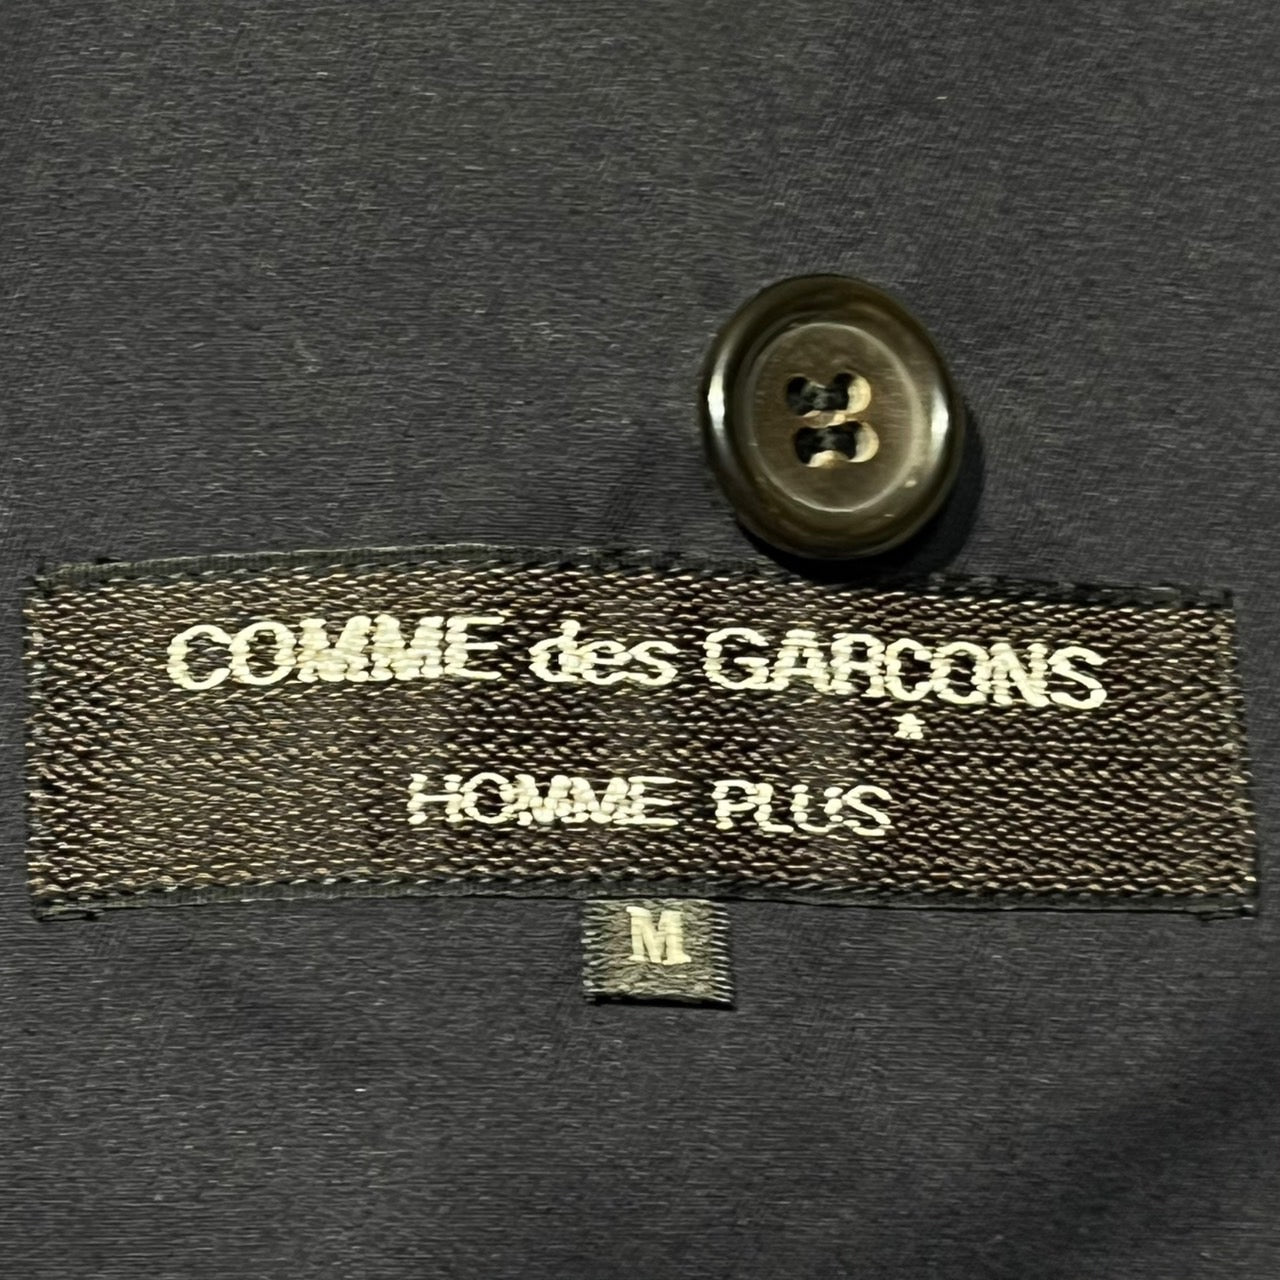 COMME des GARCONS HOMME PLUS(コムデギャルソンオムプリュス) 80'sコットンダブルジャケット PJ-111020 表記なし(XL程度) ネイビー AD表記なし